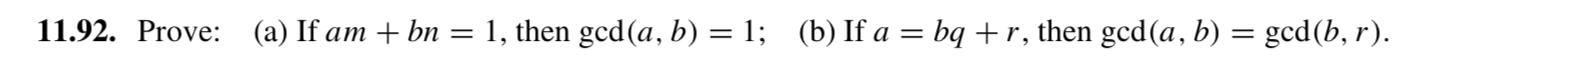 11.92. Prove: (a) If am + bn = 1, then gcd(a, b) = 1; (b) If a = bq +r, then gcd(a, b) = gcd(b, r).
